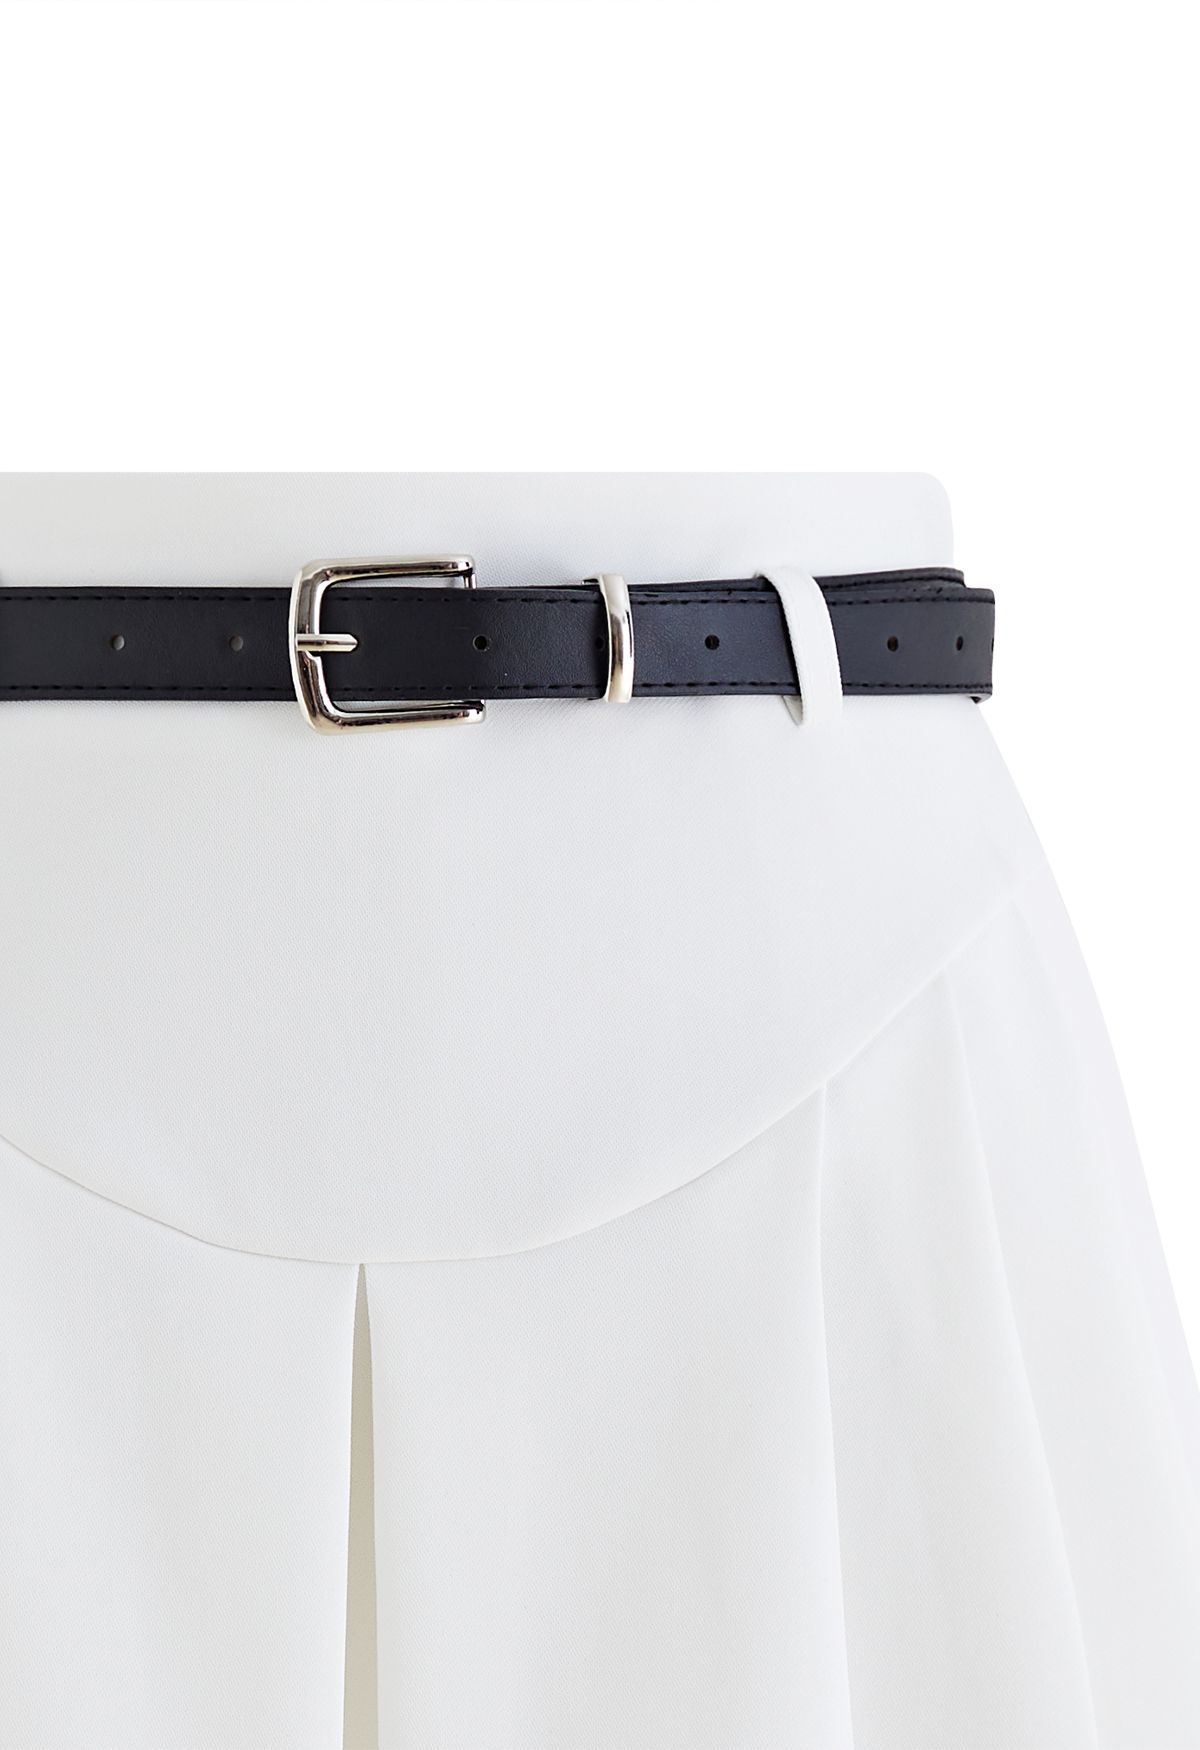 Minifalda plisada con cinturón y detalle de costuras en blanco